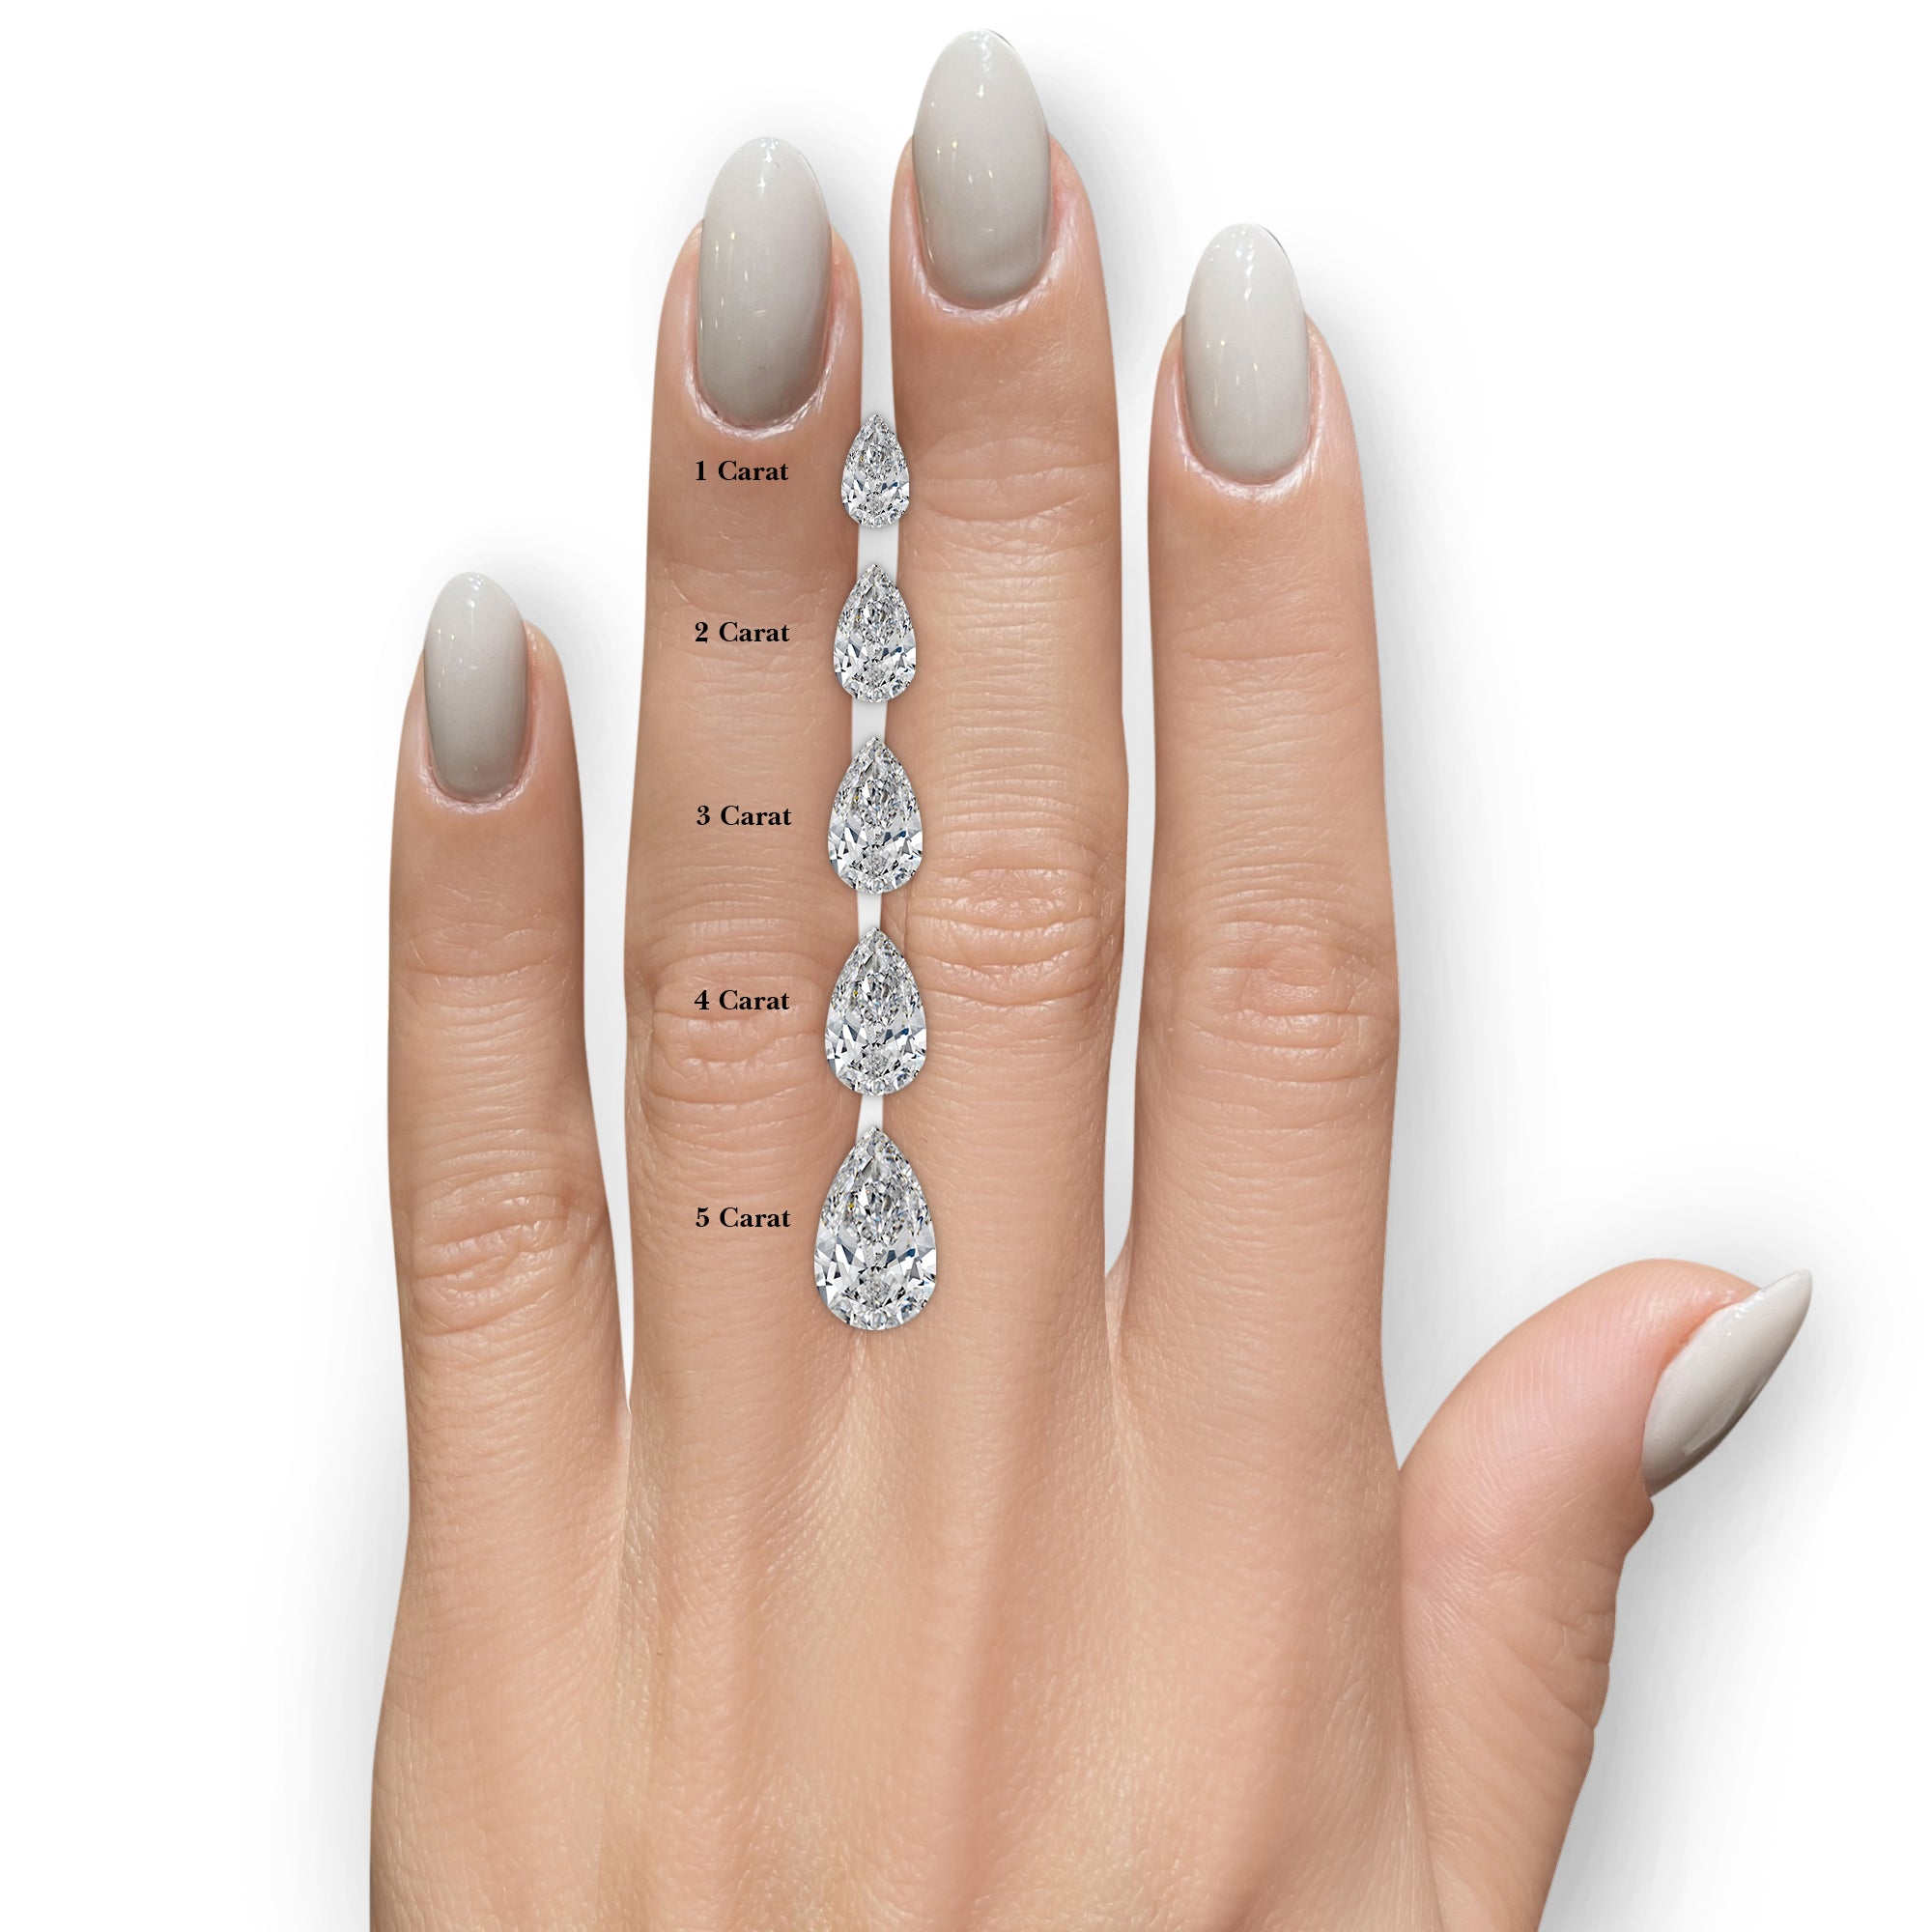 Margarita Diamond Engagement Ring -14K Rose Gold